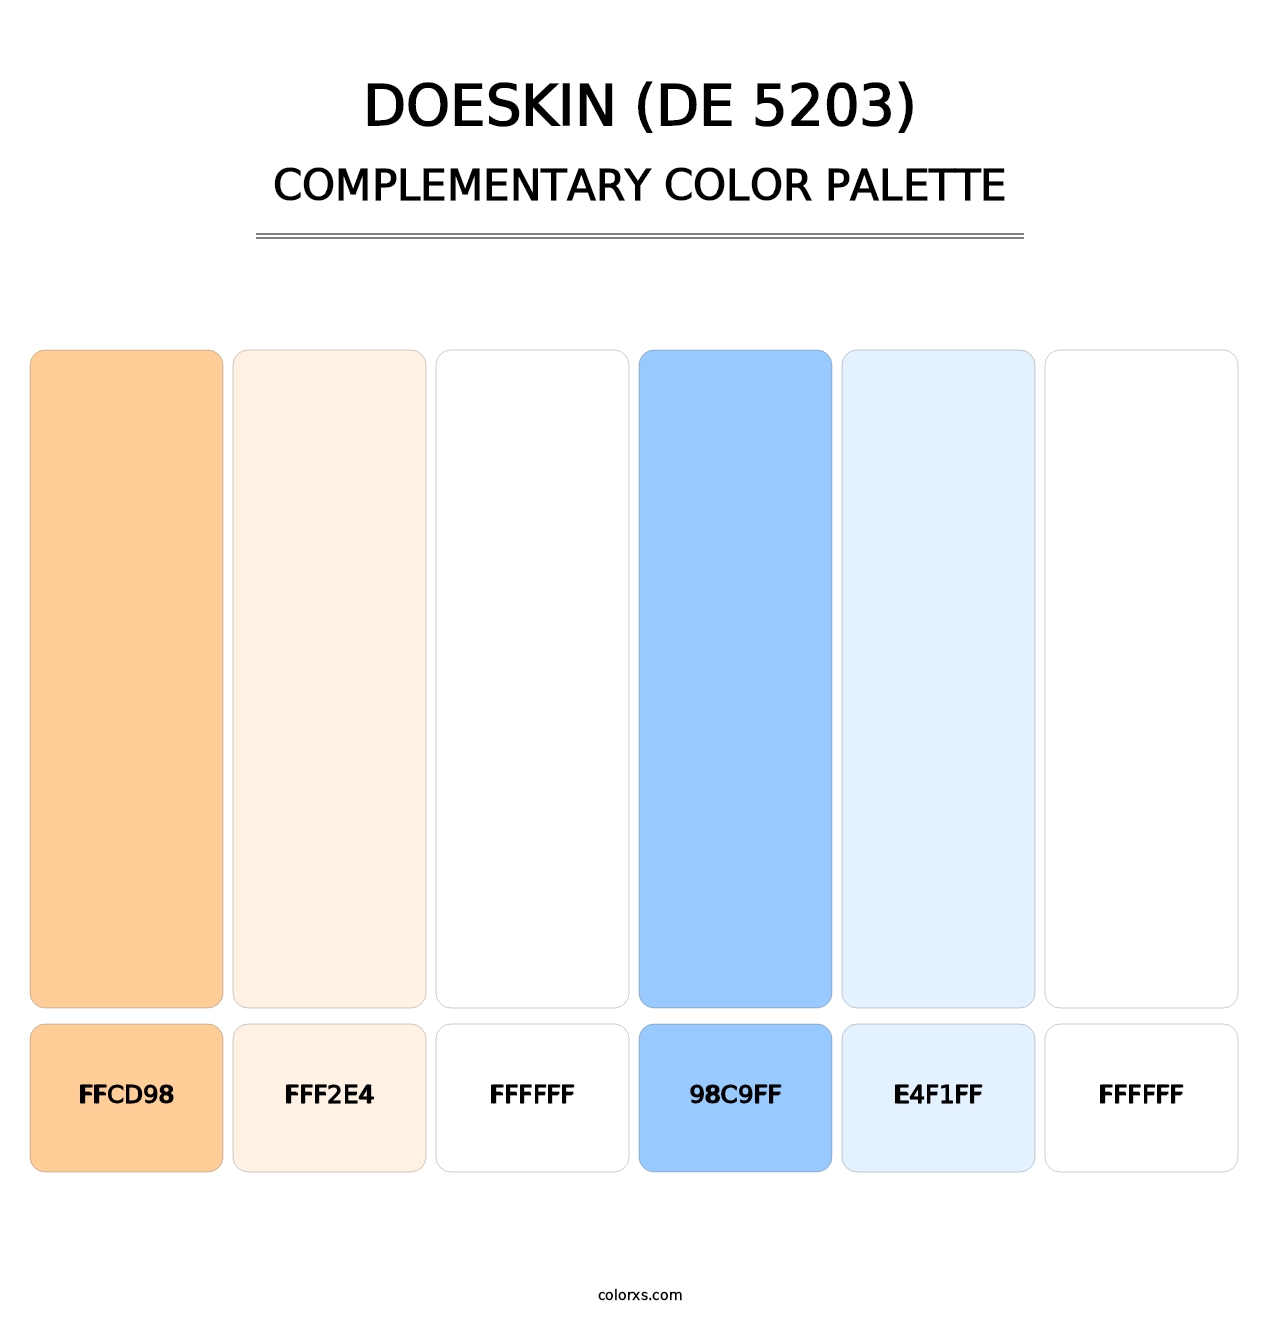 Doeskin (DE 5203) - Complementary Color Palette